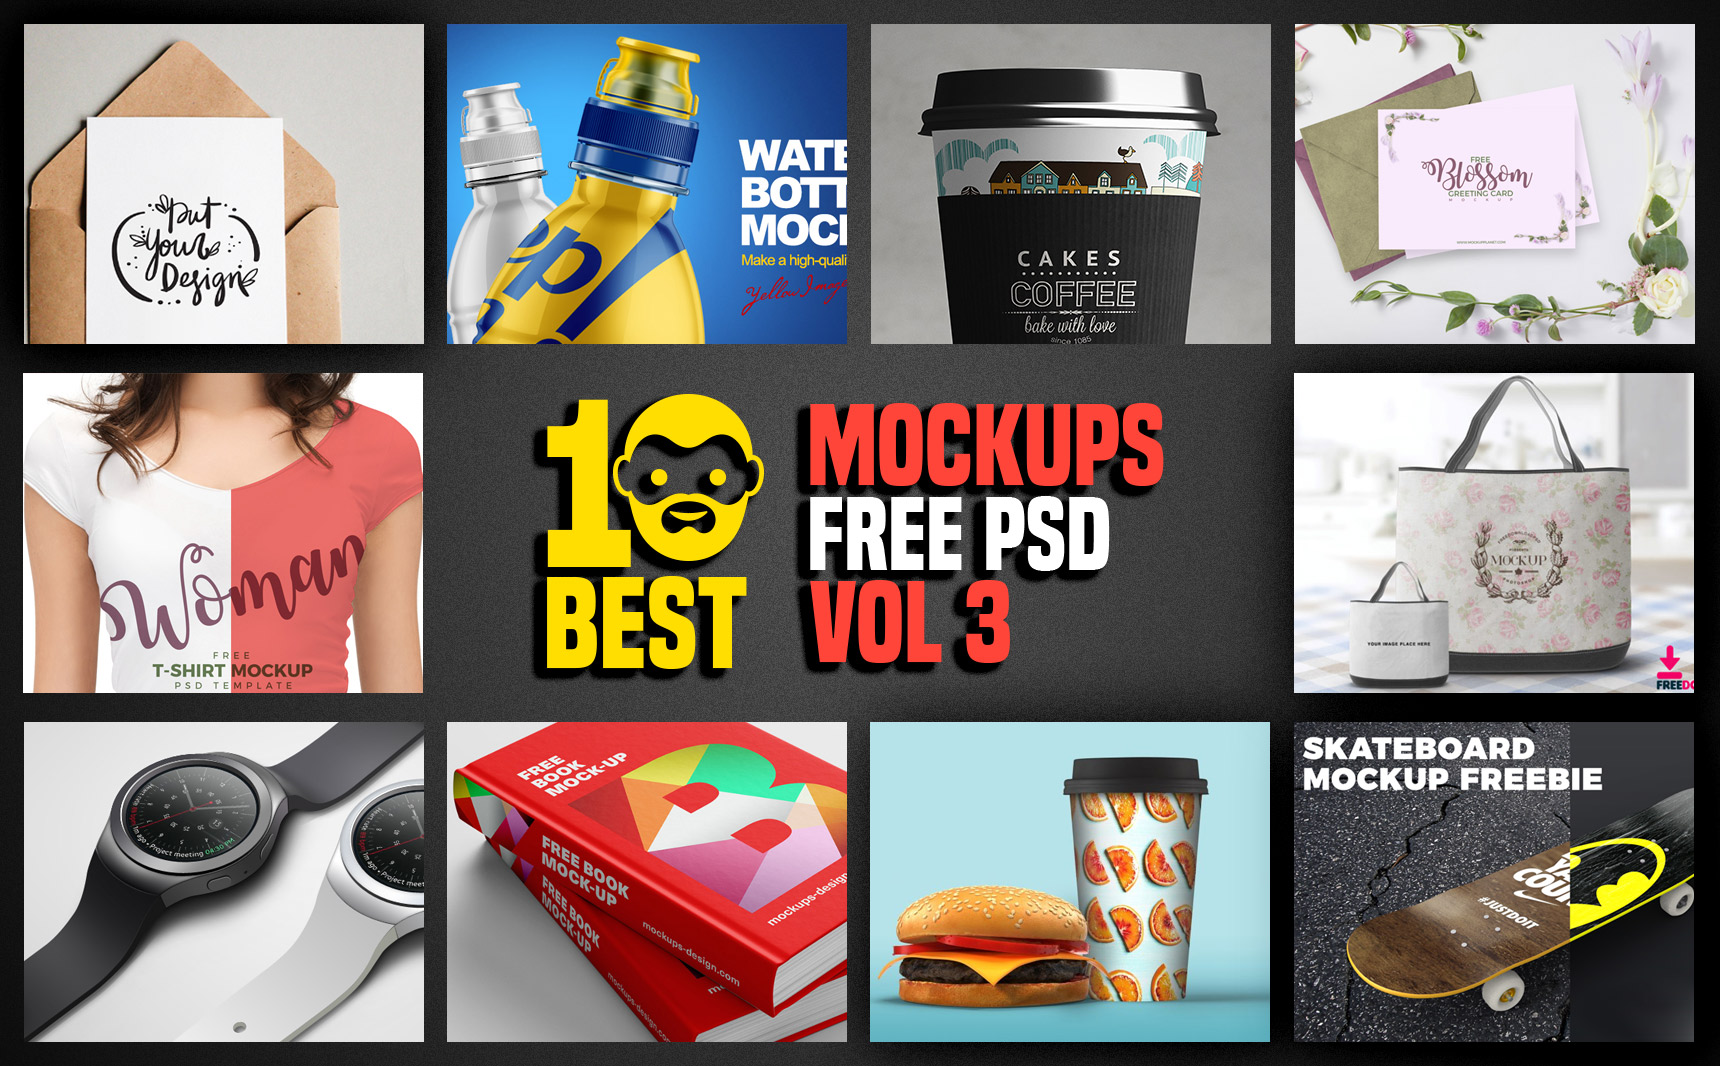 Download 10 Best Mockup Free PSD Vol 3 | PsdDaddy.com